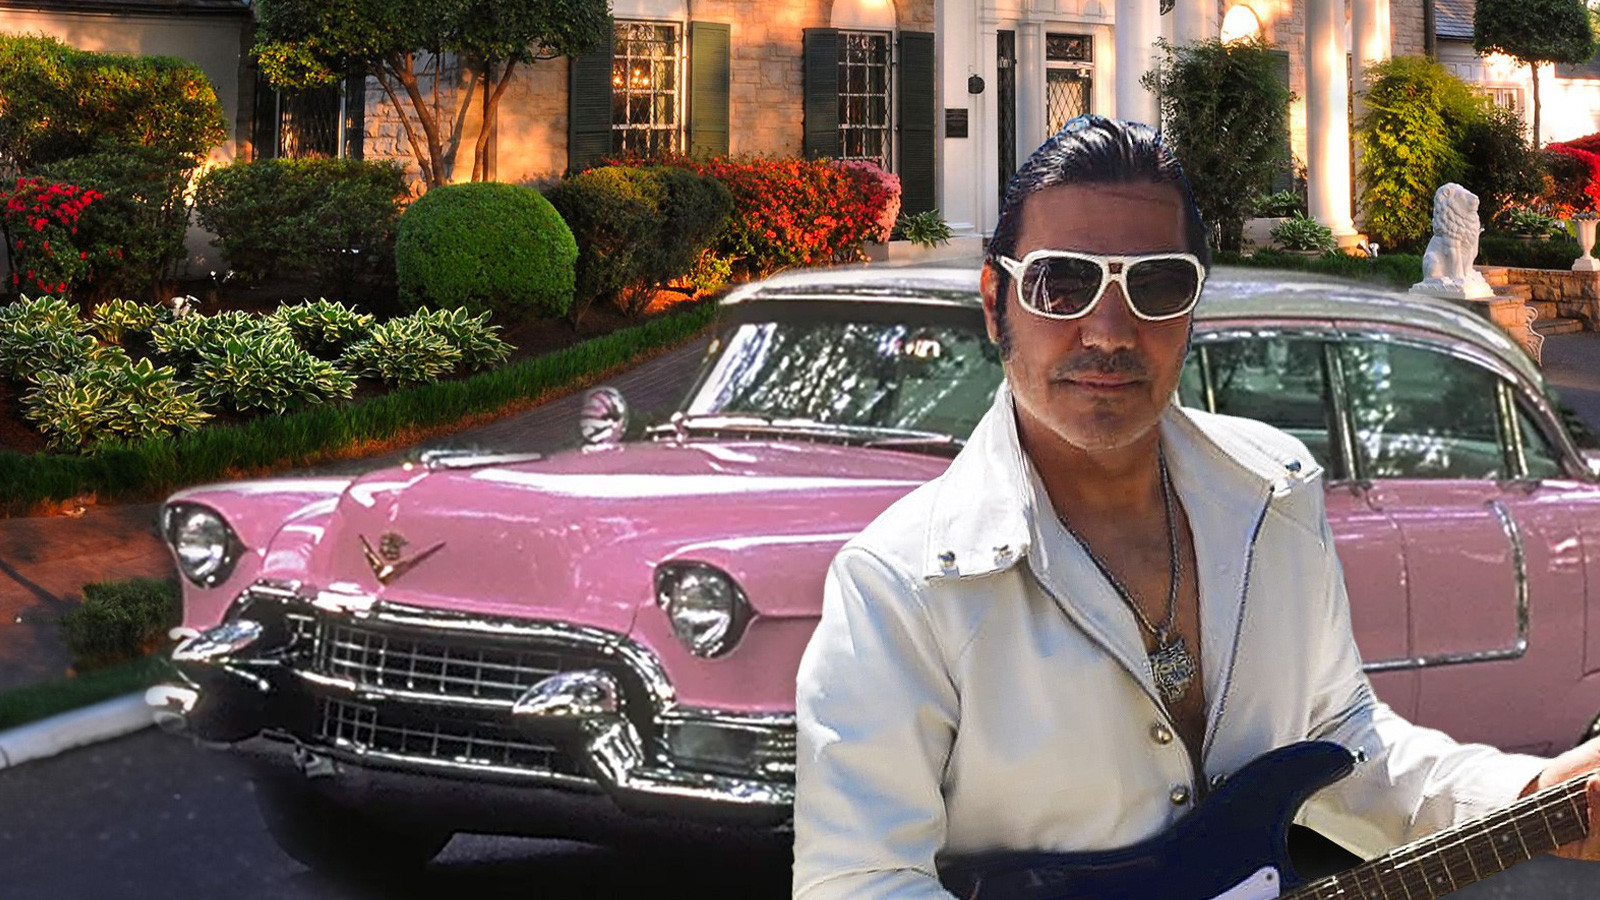 Türk yapımcı Ramiz Özbay, Presley’in evi Graceland'da çekim yapan ilk kişi oldu. 